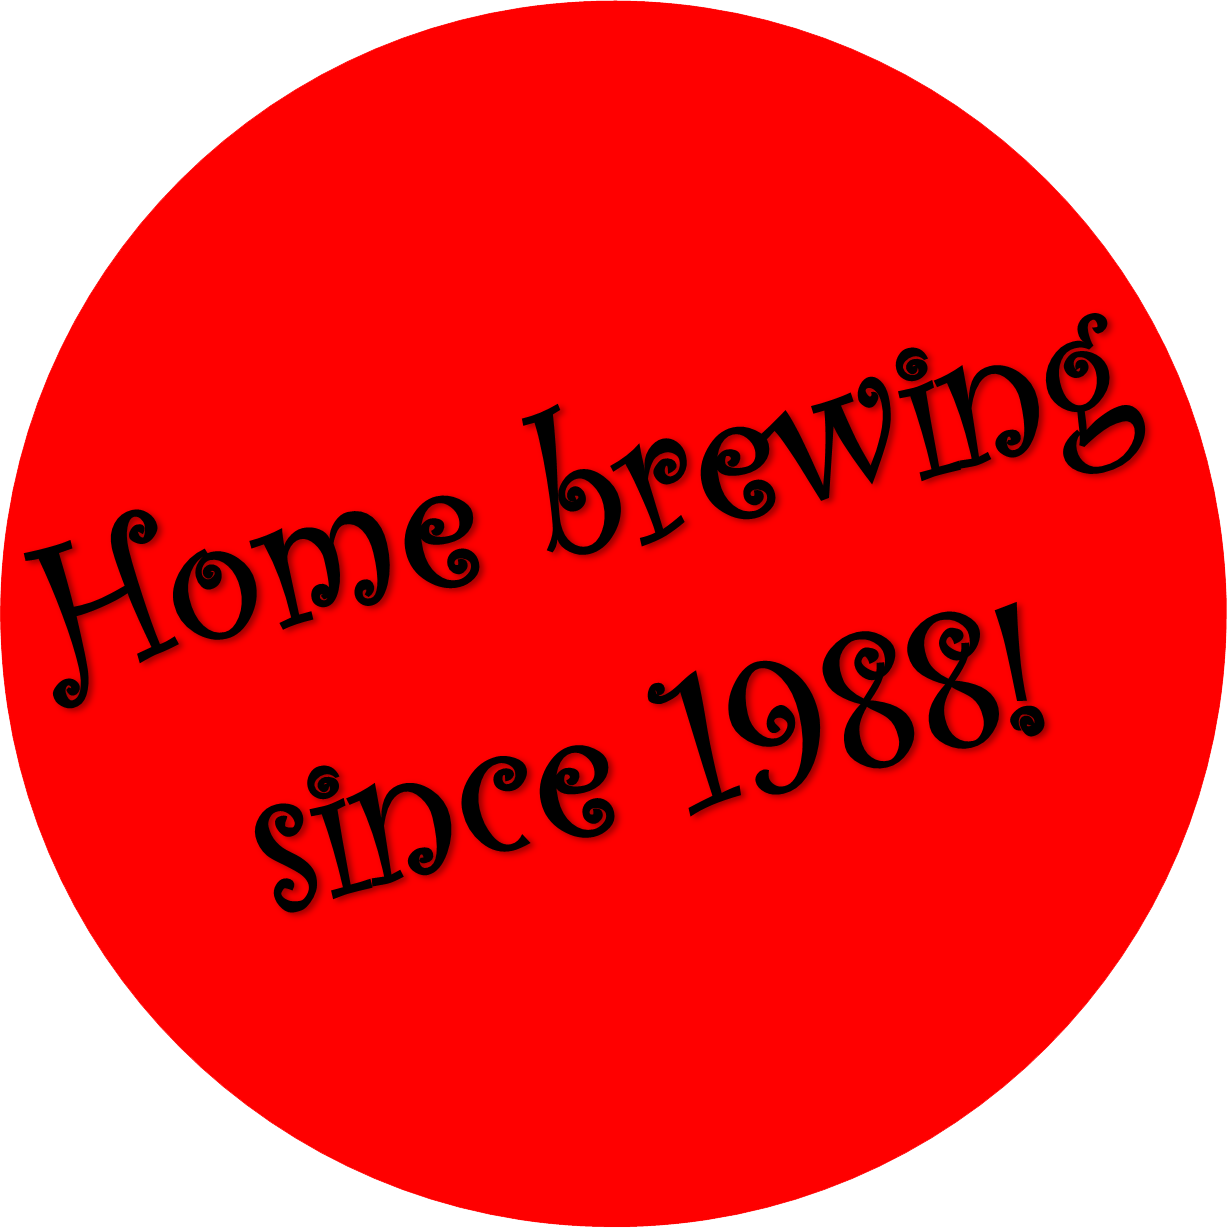 Tim VA7PD, home brewing stuff since 1988!